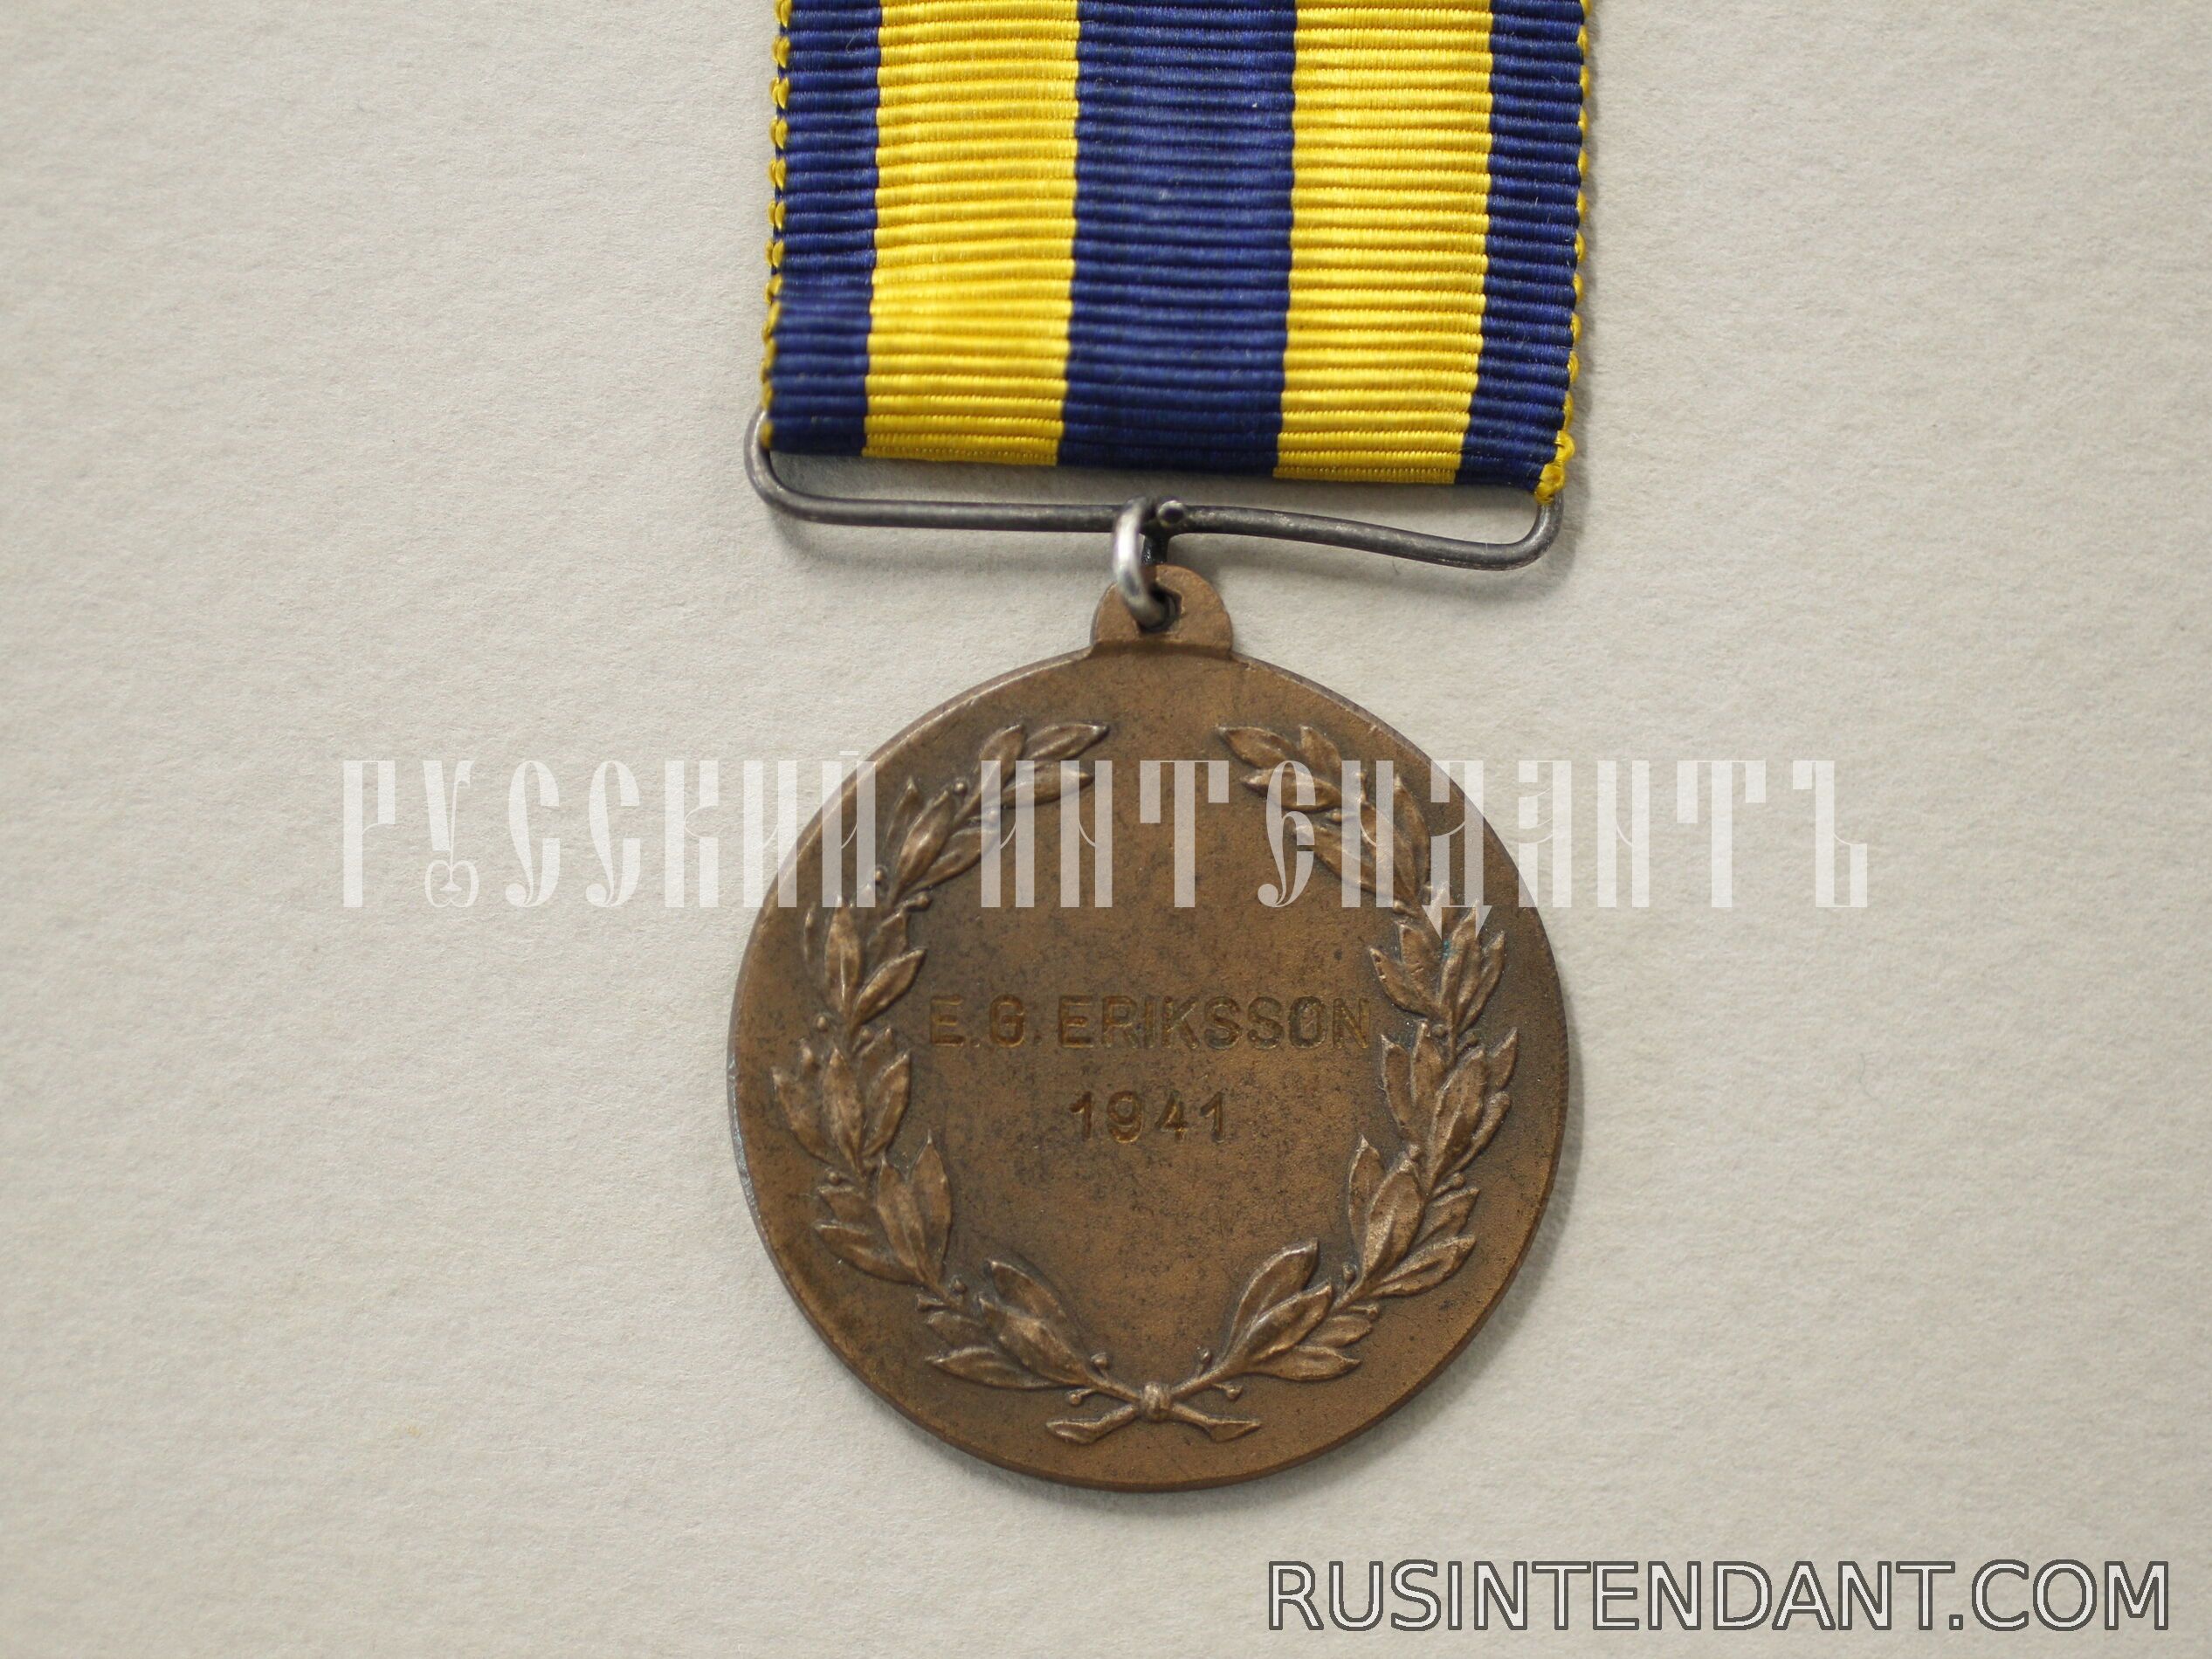 Фото 2: Наградная медаль стрельбища Дандерюд 